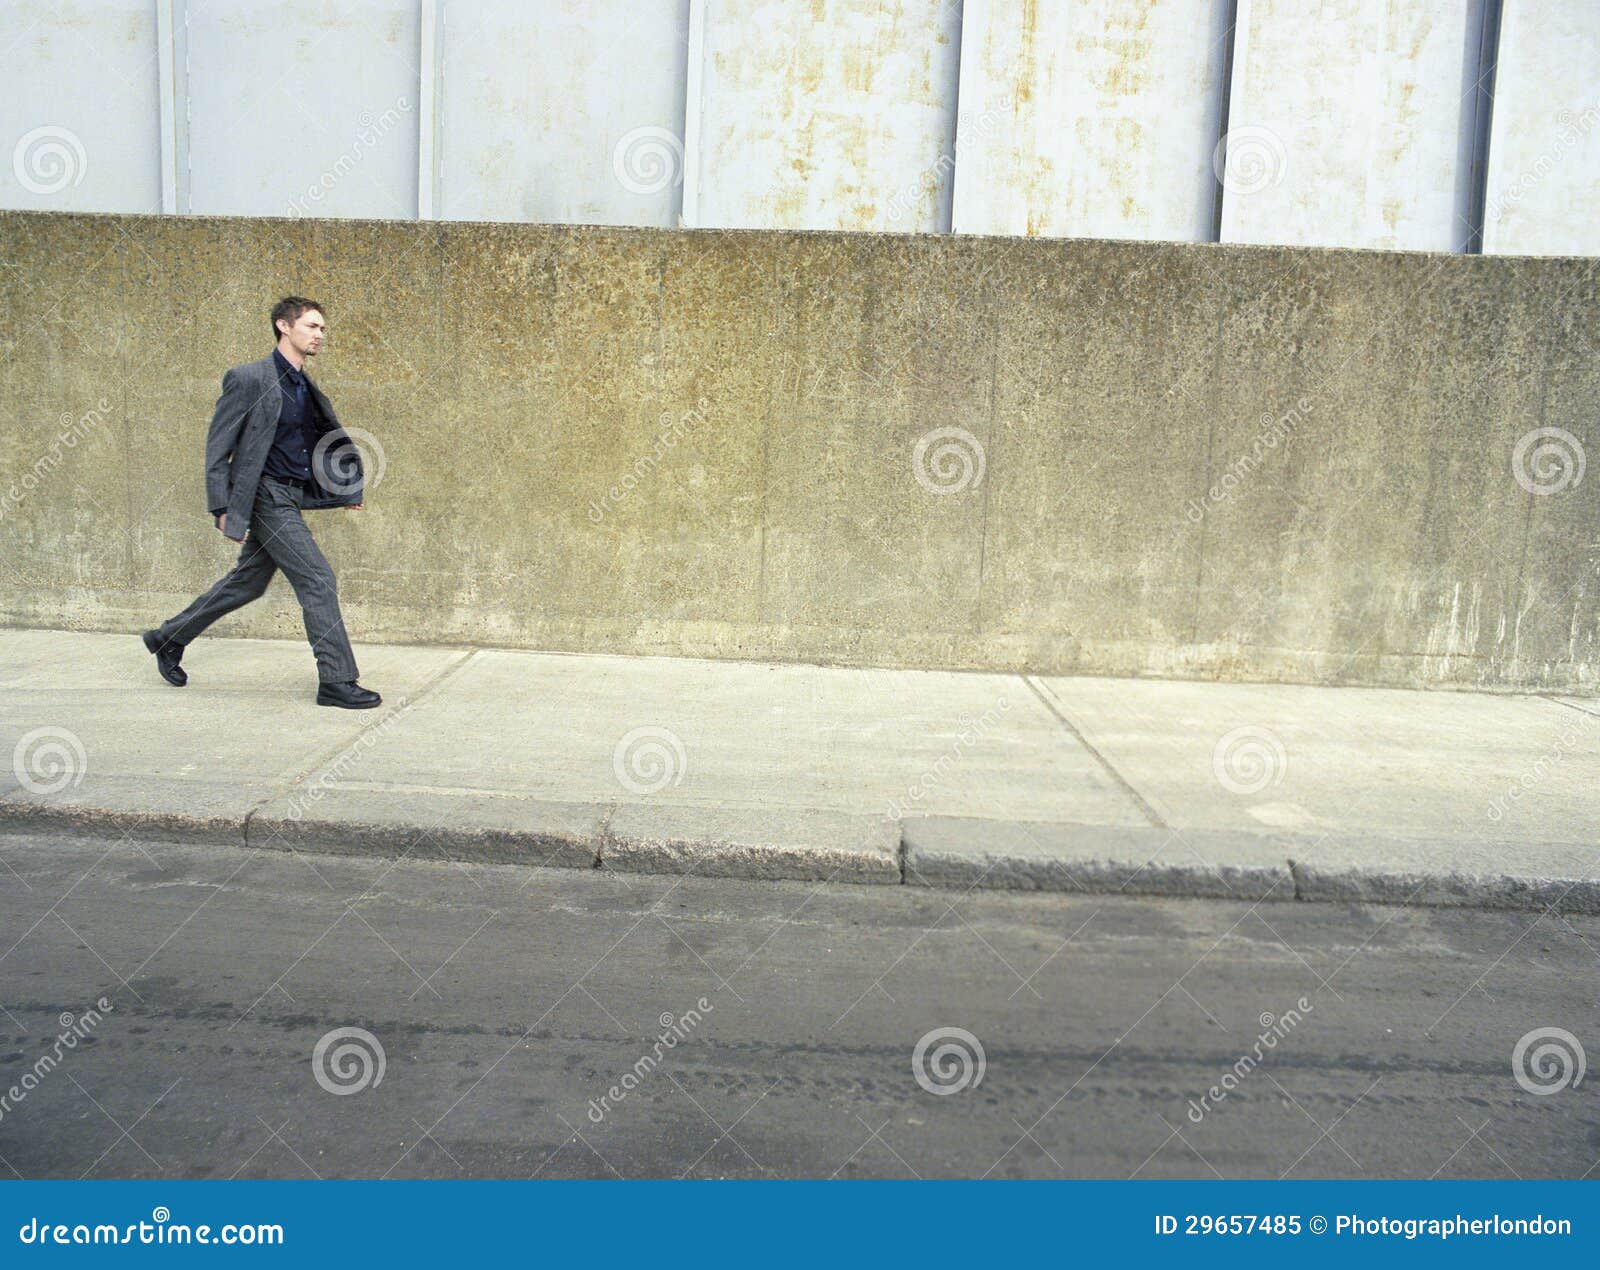 businessman walking on sidewalk